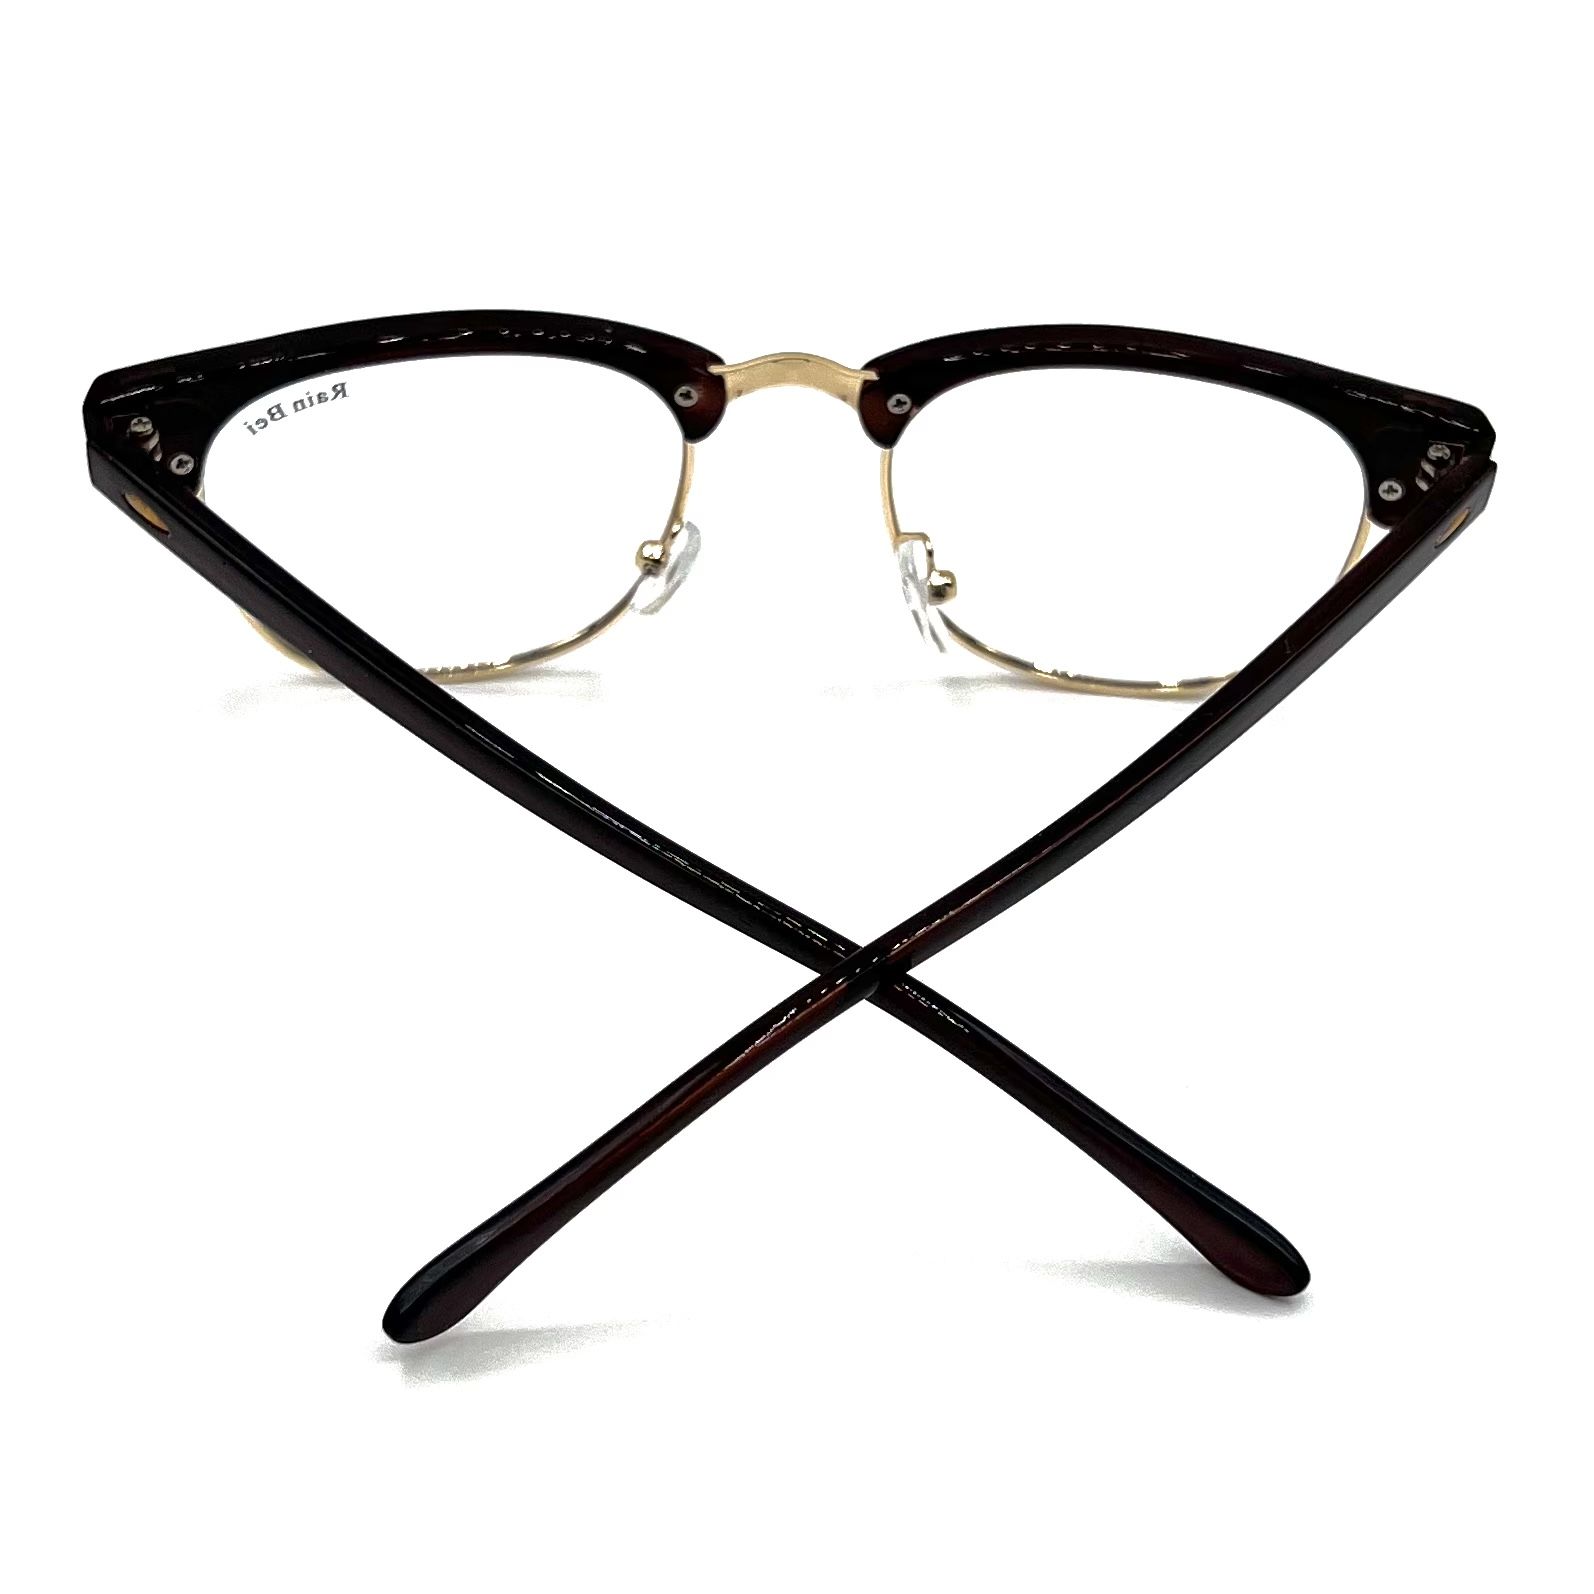 فریم عینک طبی مدل Ri 3016 -  - 2